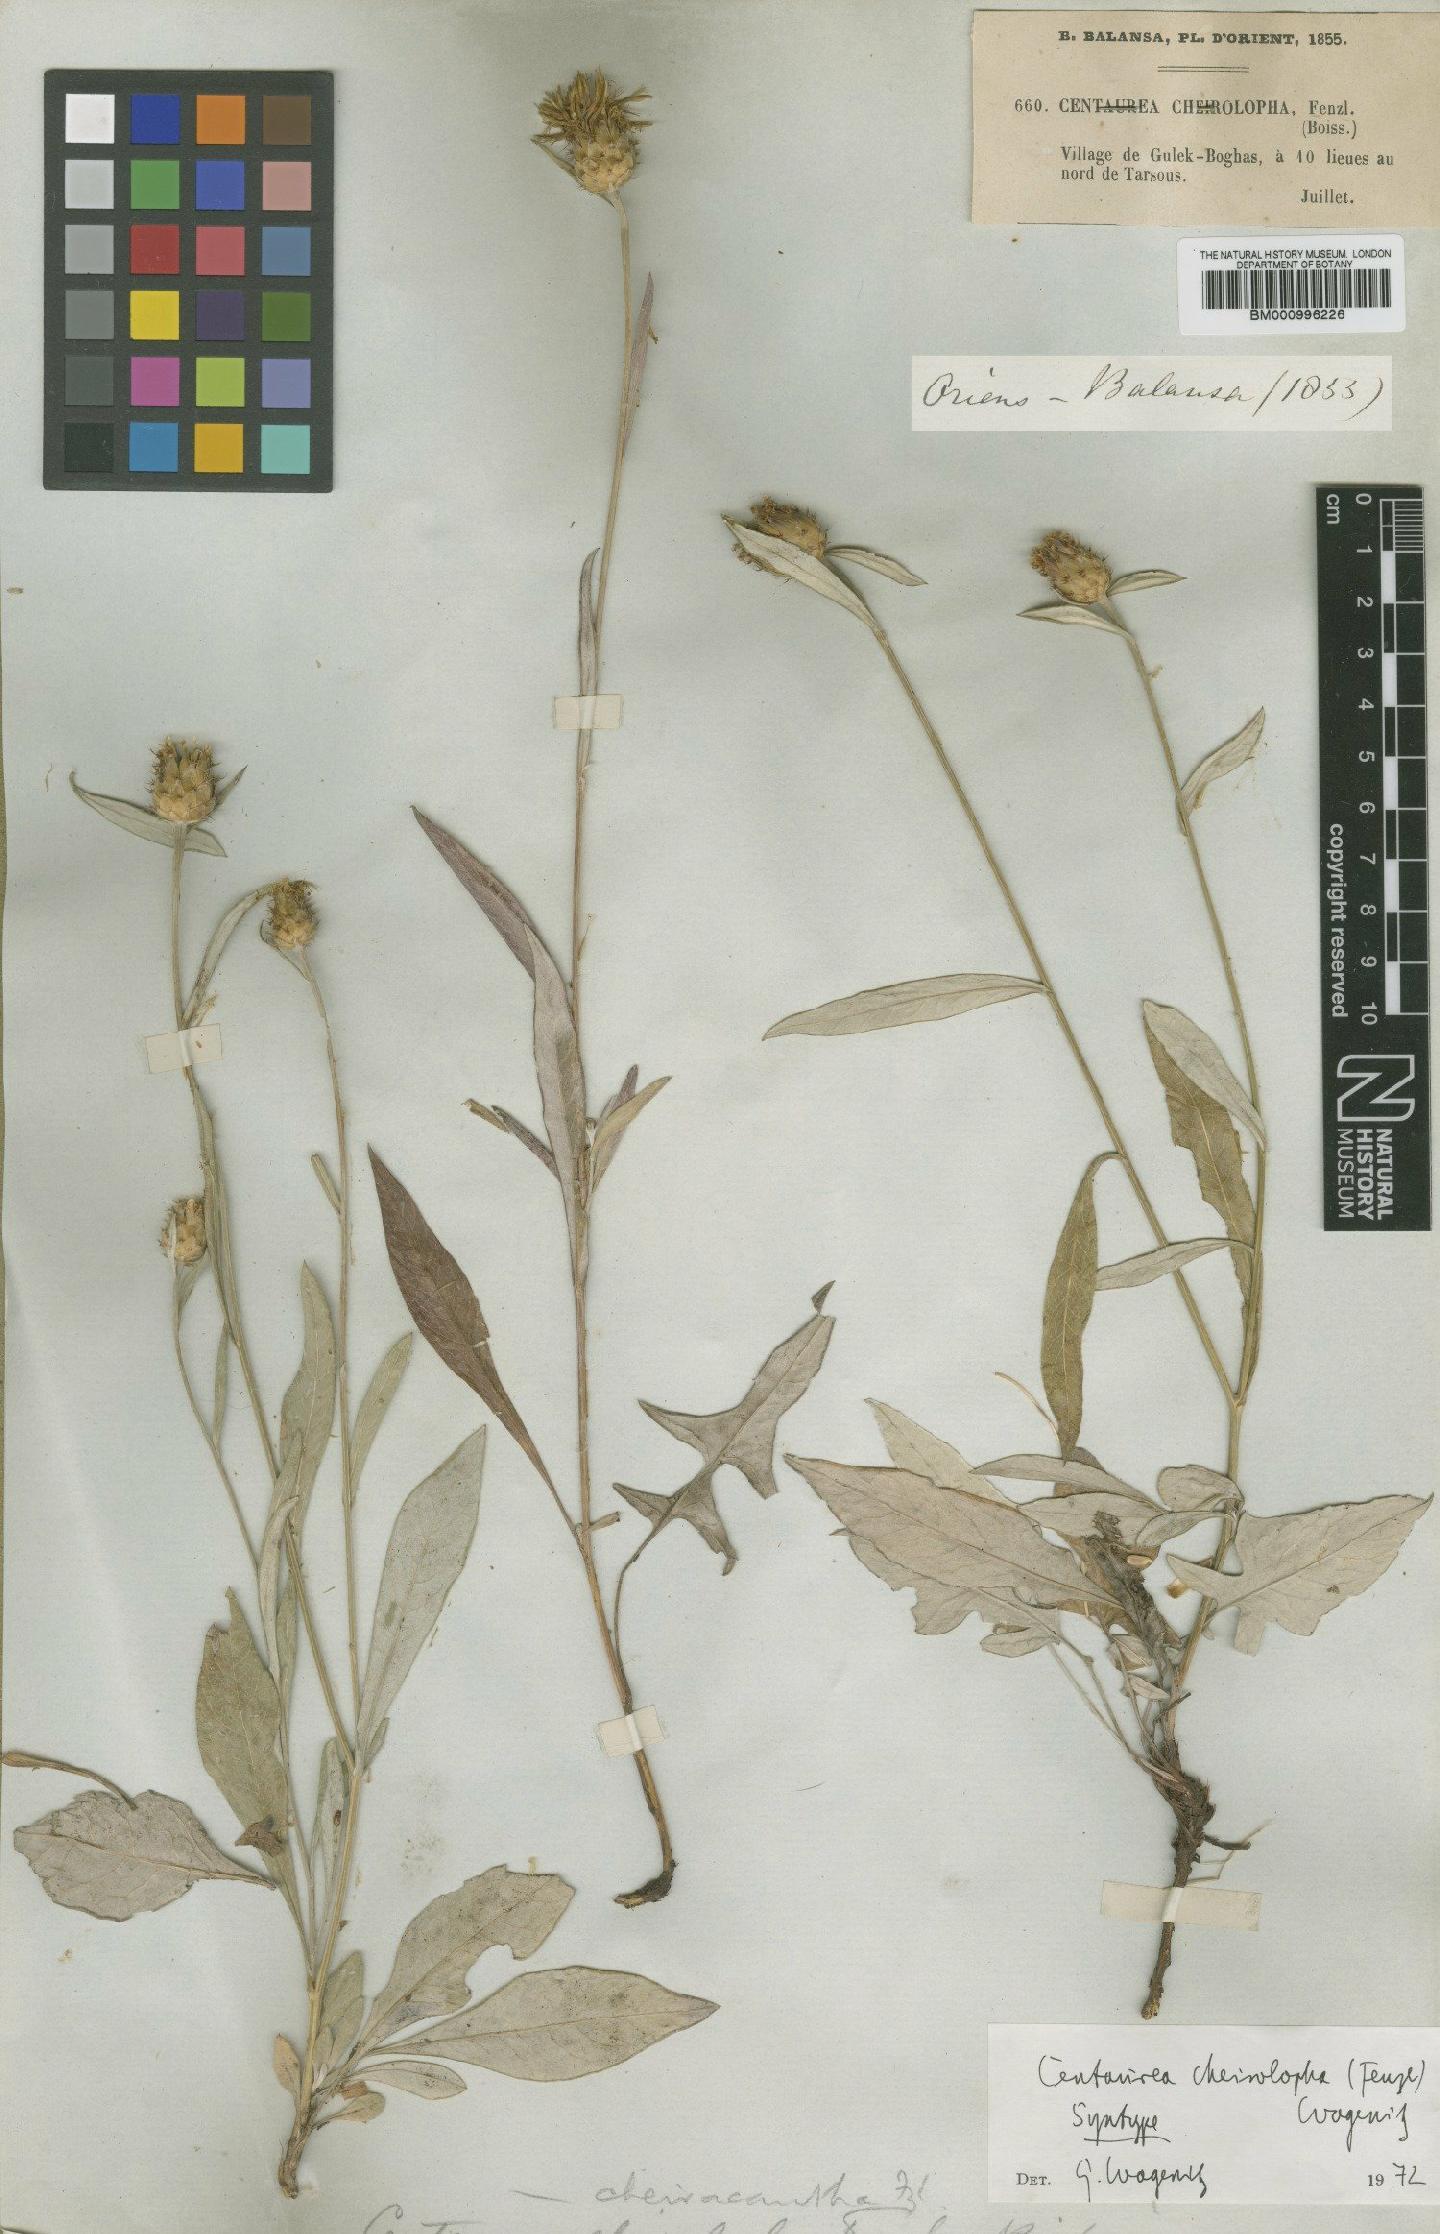 To NHMUK collection (Centaurea cheiracantha Boiss. ex Fenzl; Syntype; NHMUK:ecatalogue:480235)